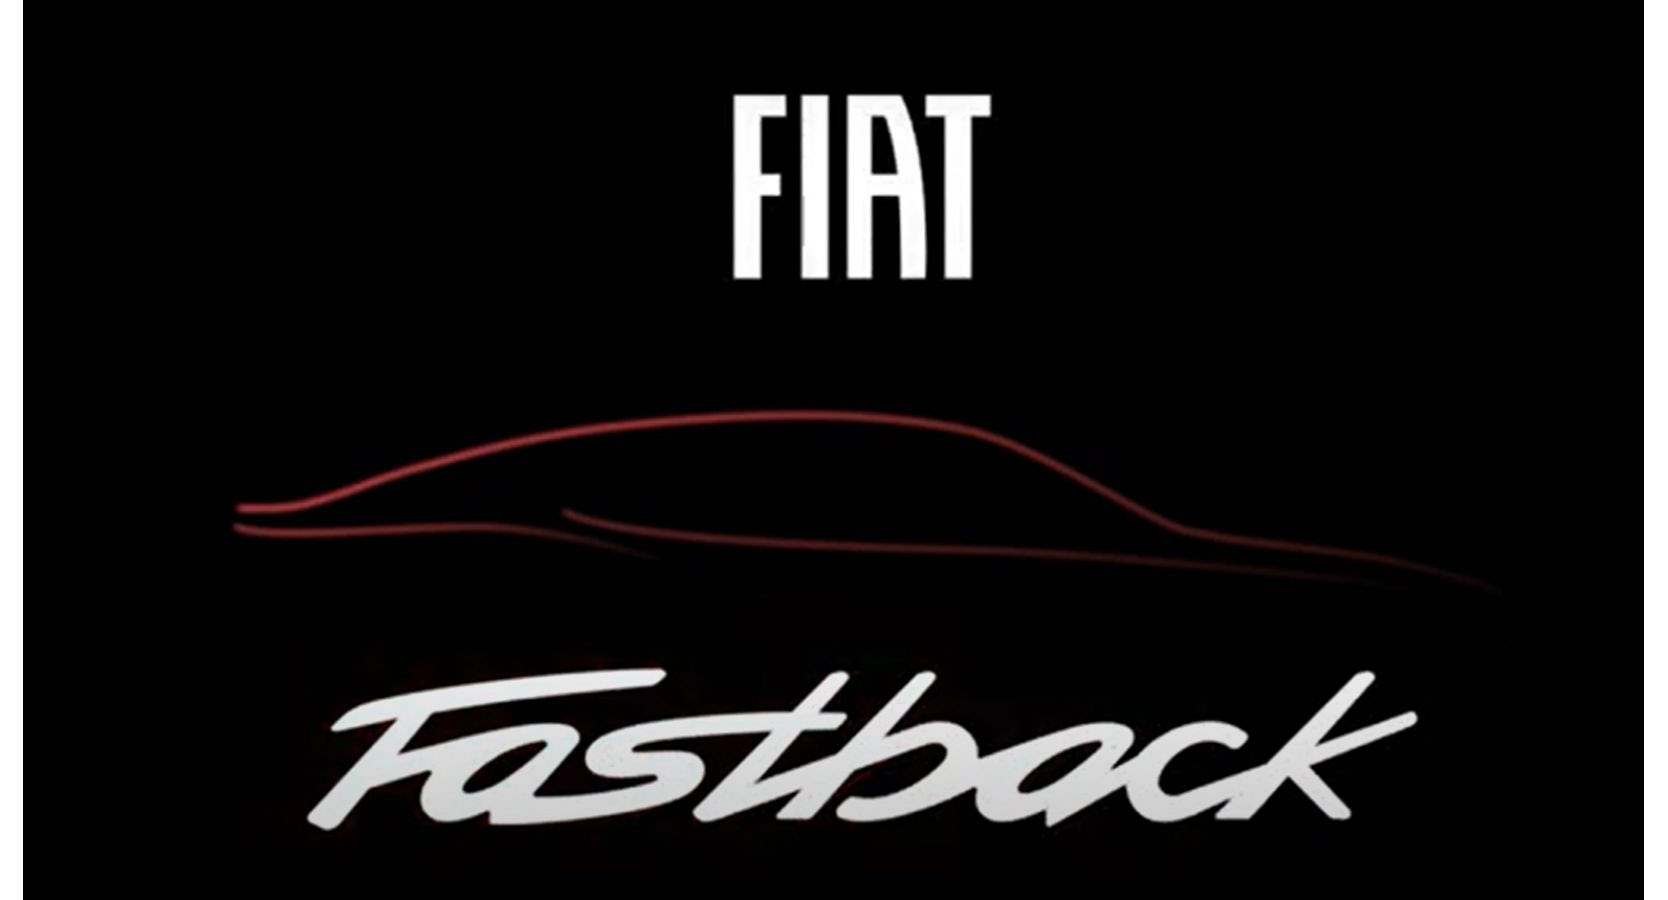 Fastback es el nombre del nuevo SUV de Fiat